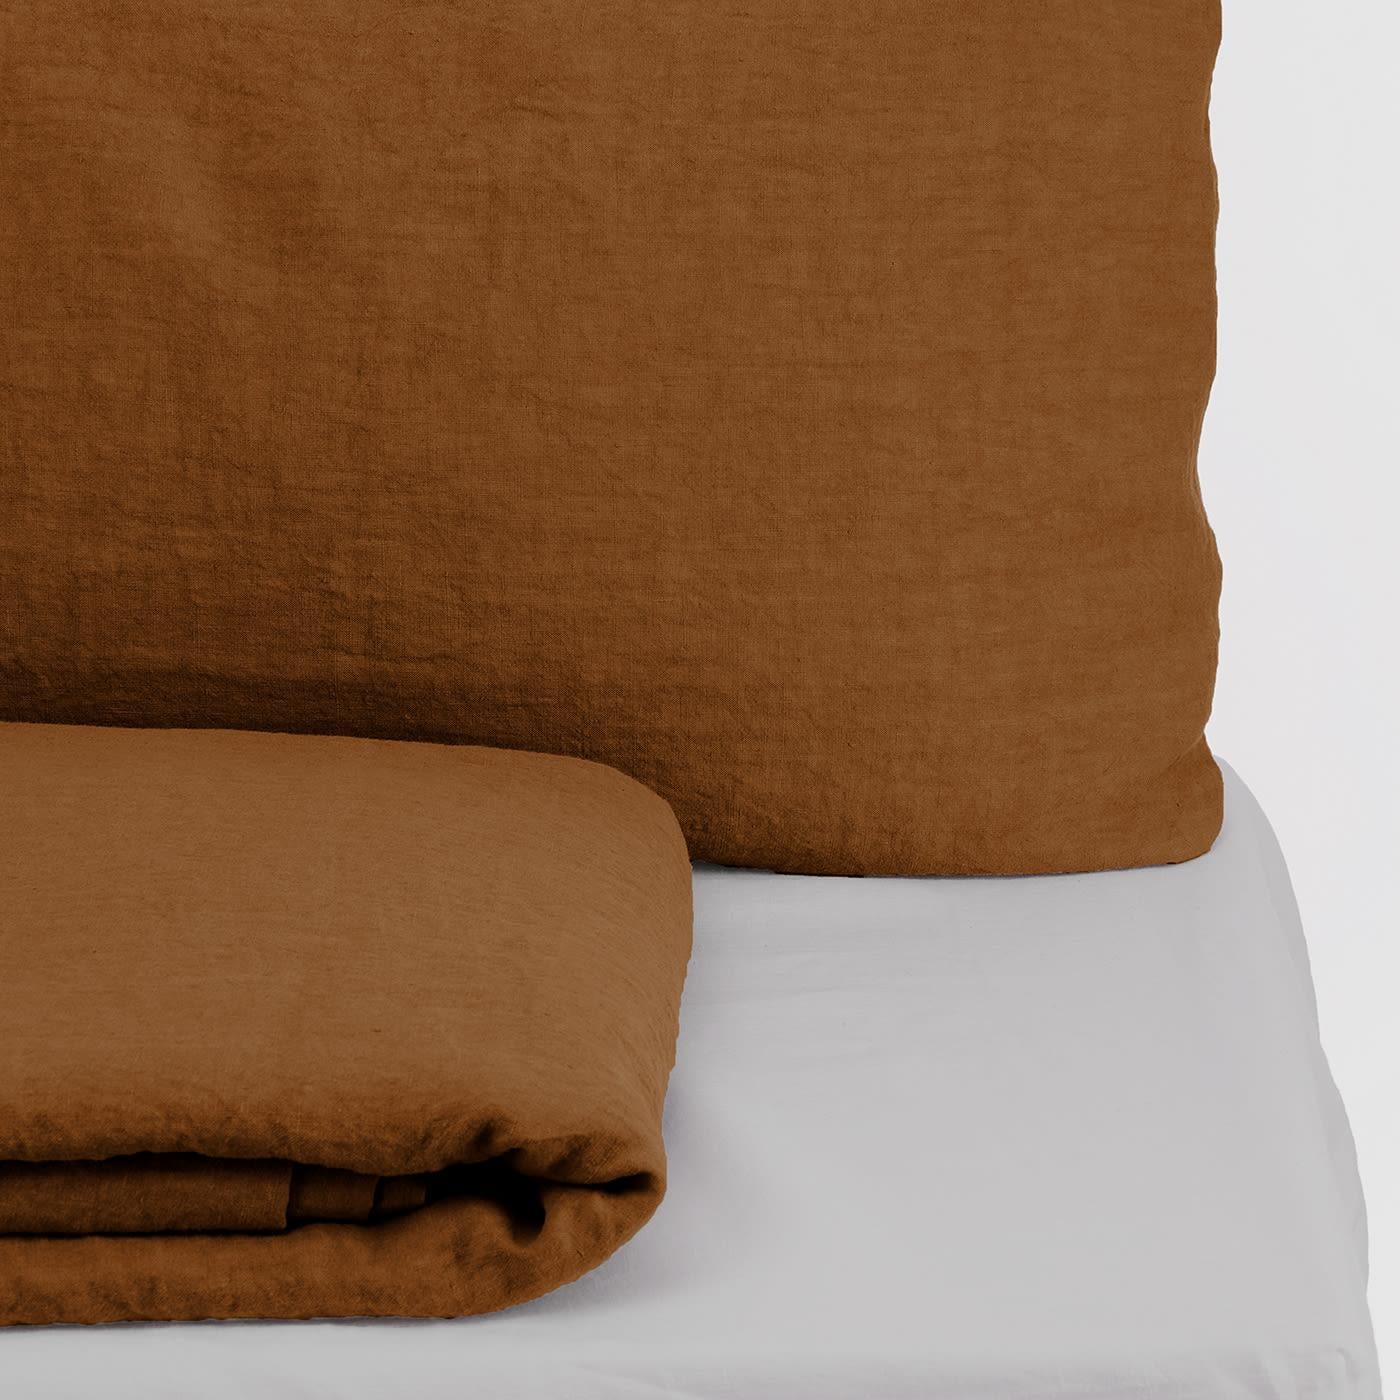 Dieses elegante und farbenfrohe Set, das vollständig aus feinstem Leinen handgefertigt ist, besteht aus einem Bettbezug mit passenden Kissenbezügen, die in einem raffinierten Sage-Braun gefärbt sind, und einem weißen Spannbettlaken, das auf eine 30